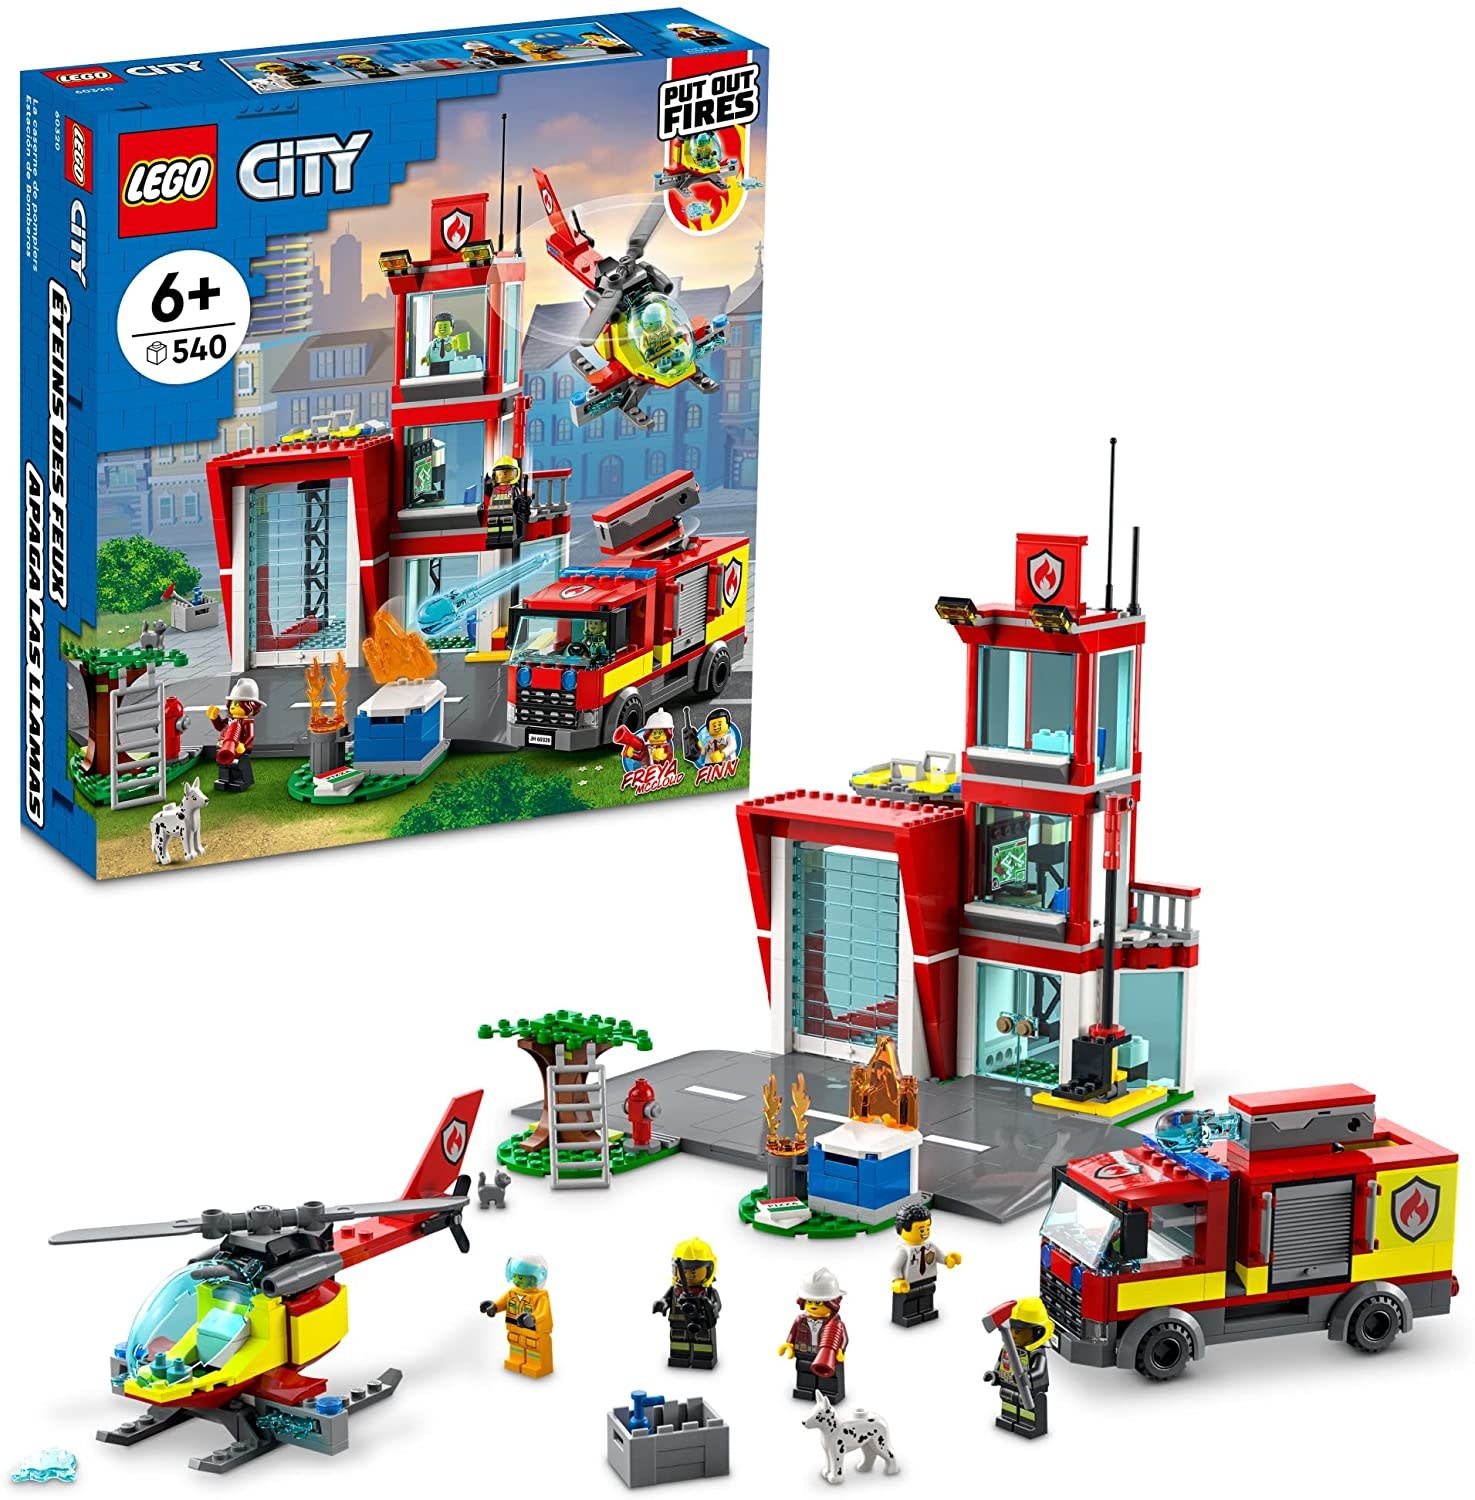 Lego City Fire Station - Minds Alive! Toys Crafts Books